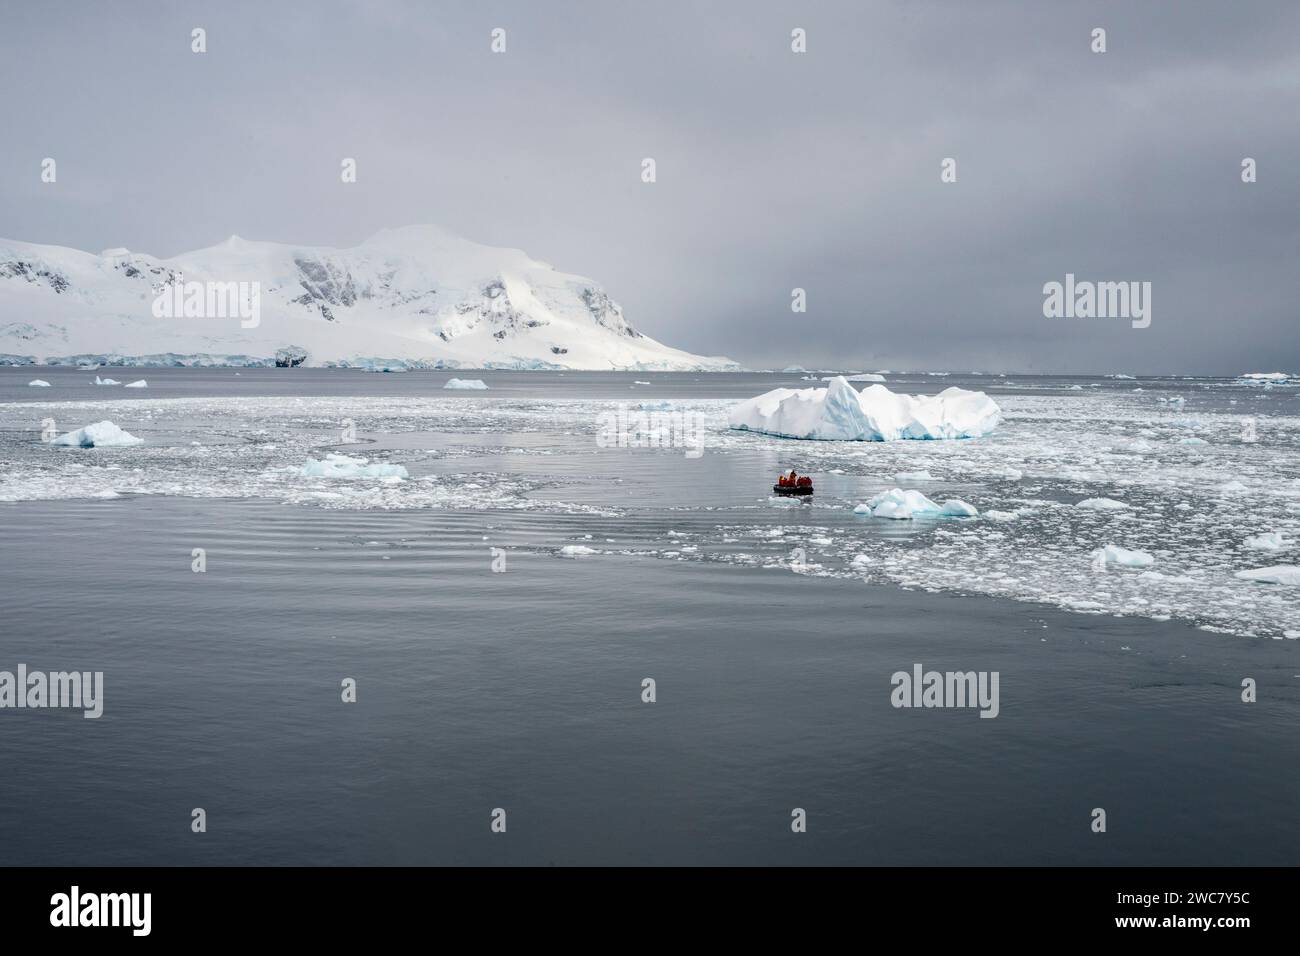 Porto di Neko, Antartide, vista del porto e della costa, zodiaco che naviga attraverso il ghiaccio, in posizione panoramica ideale Foto Stock